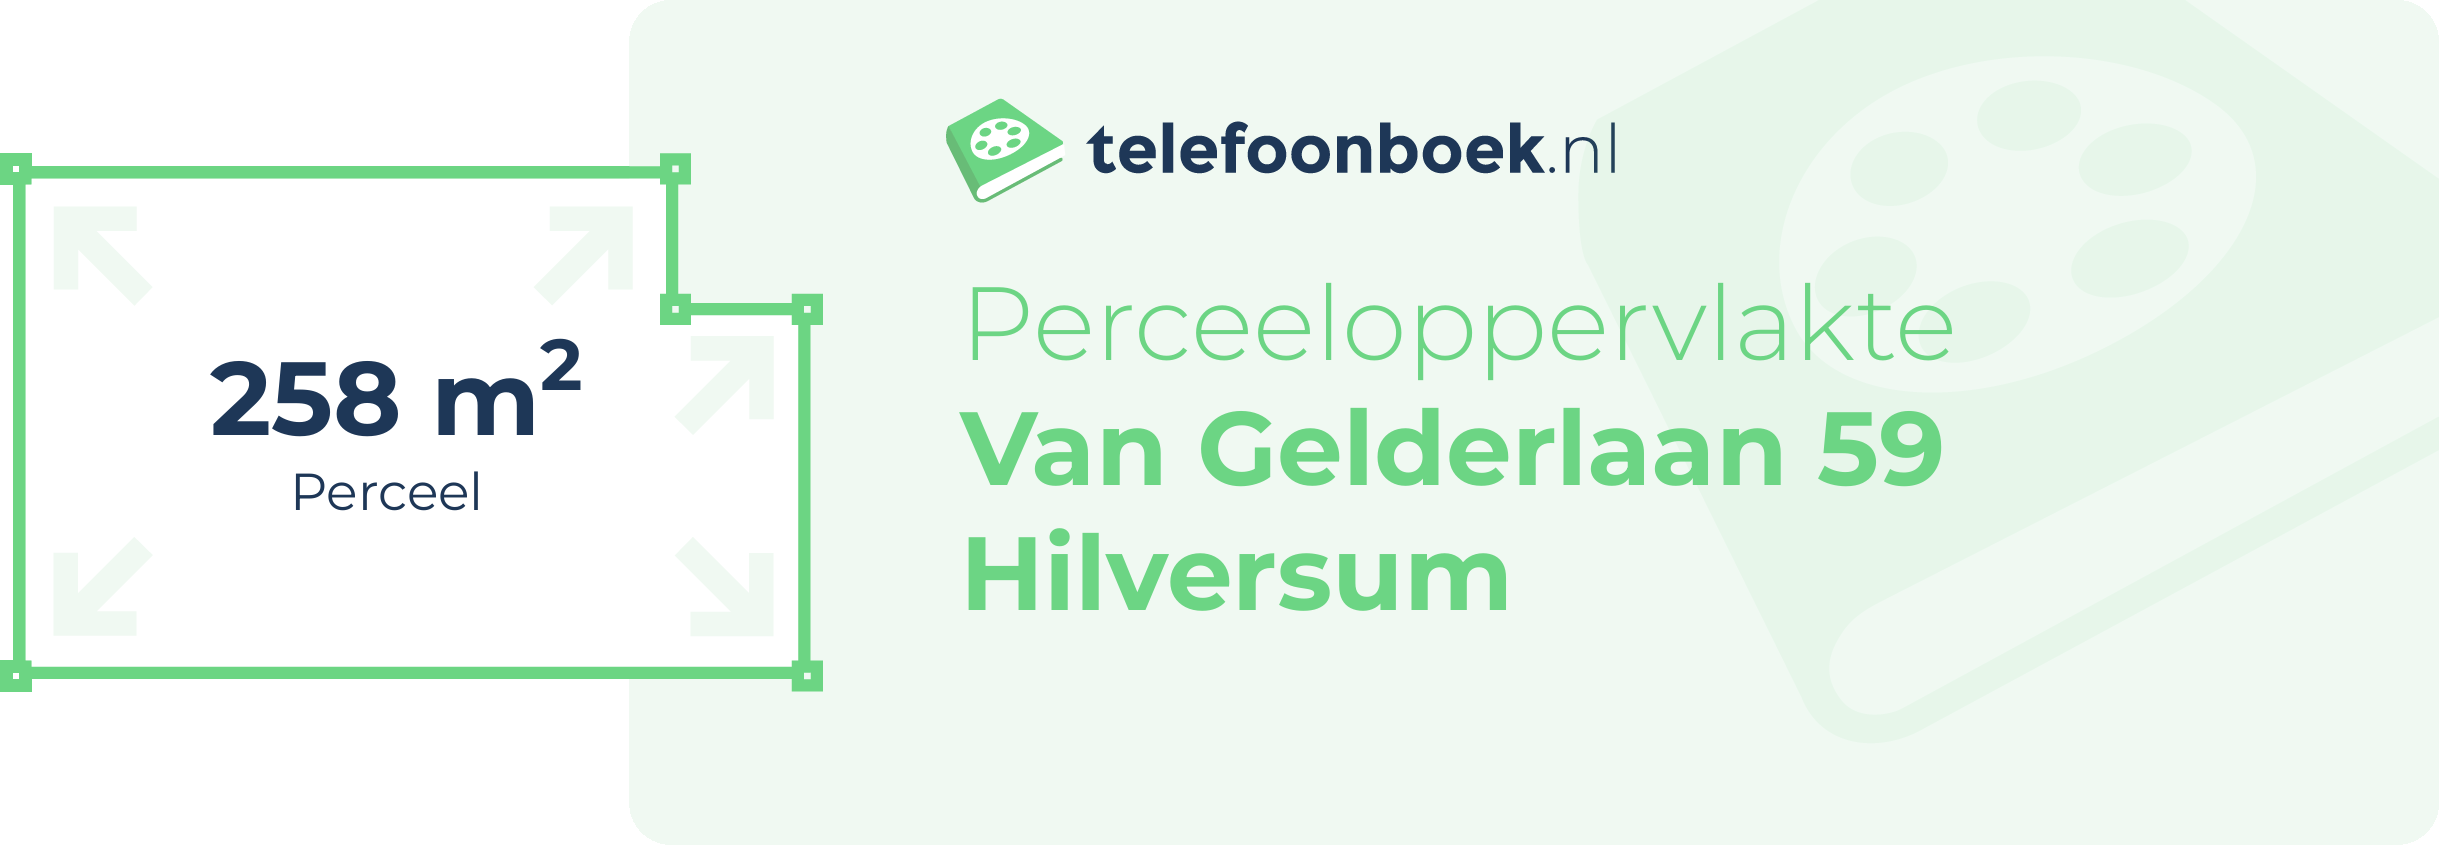 Perceeloppervlakte Van Gelderlaan 59 Hilversum